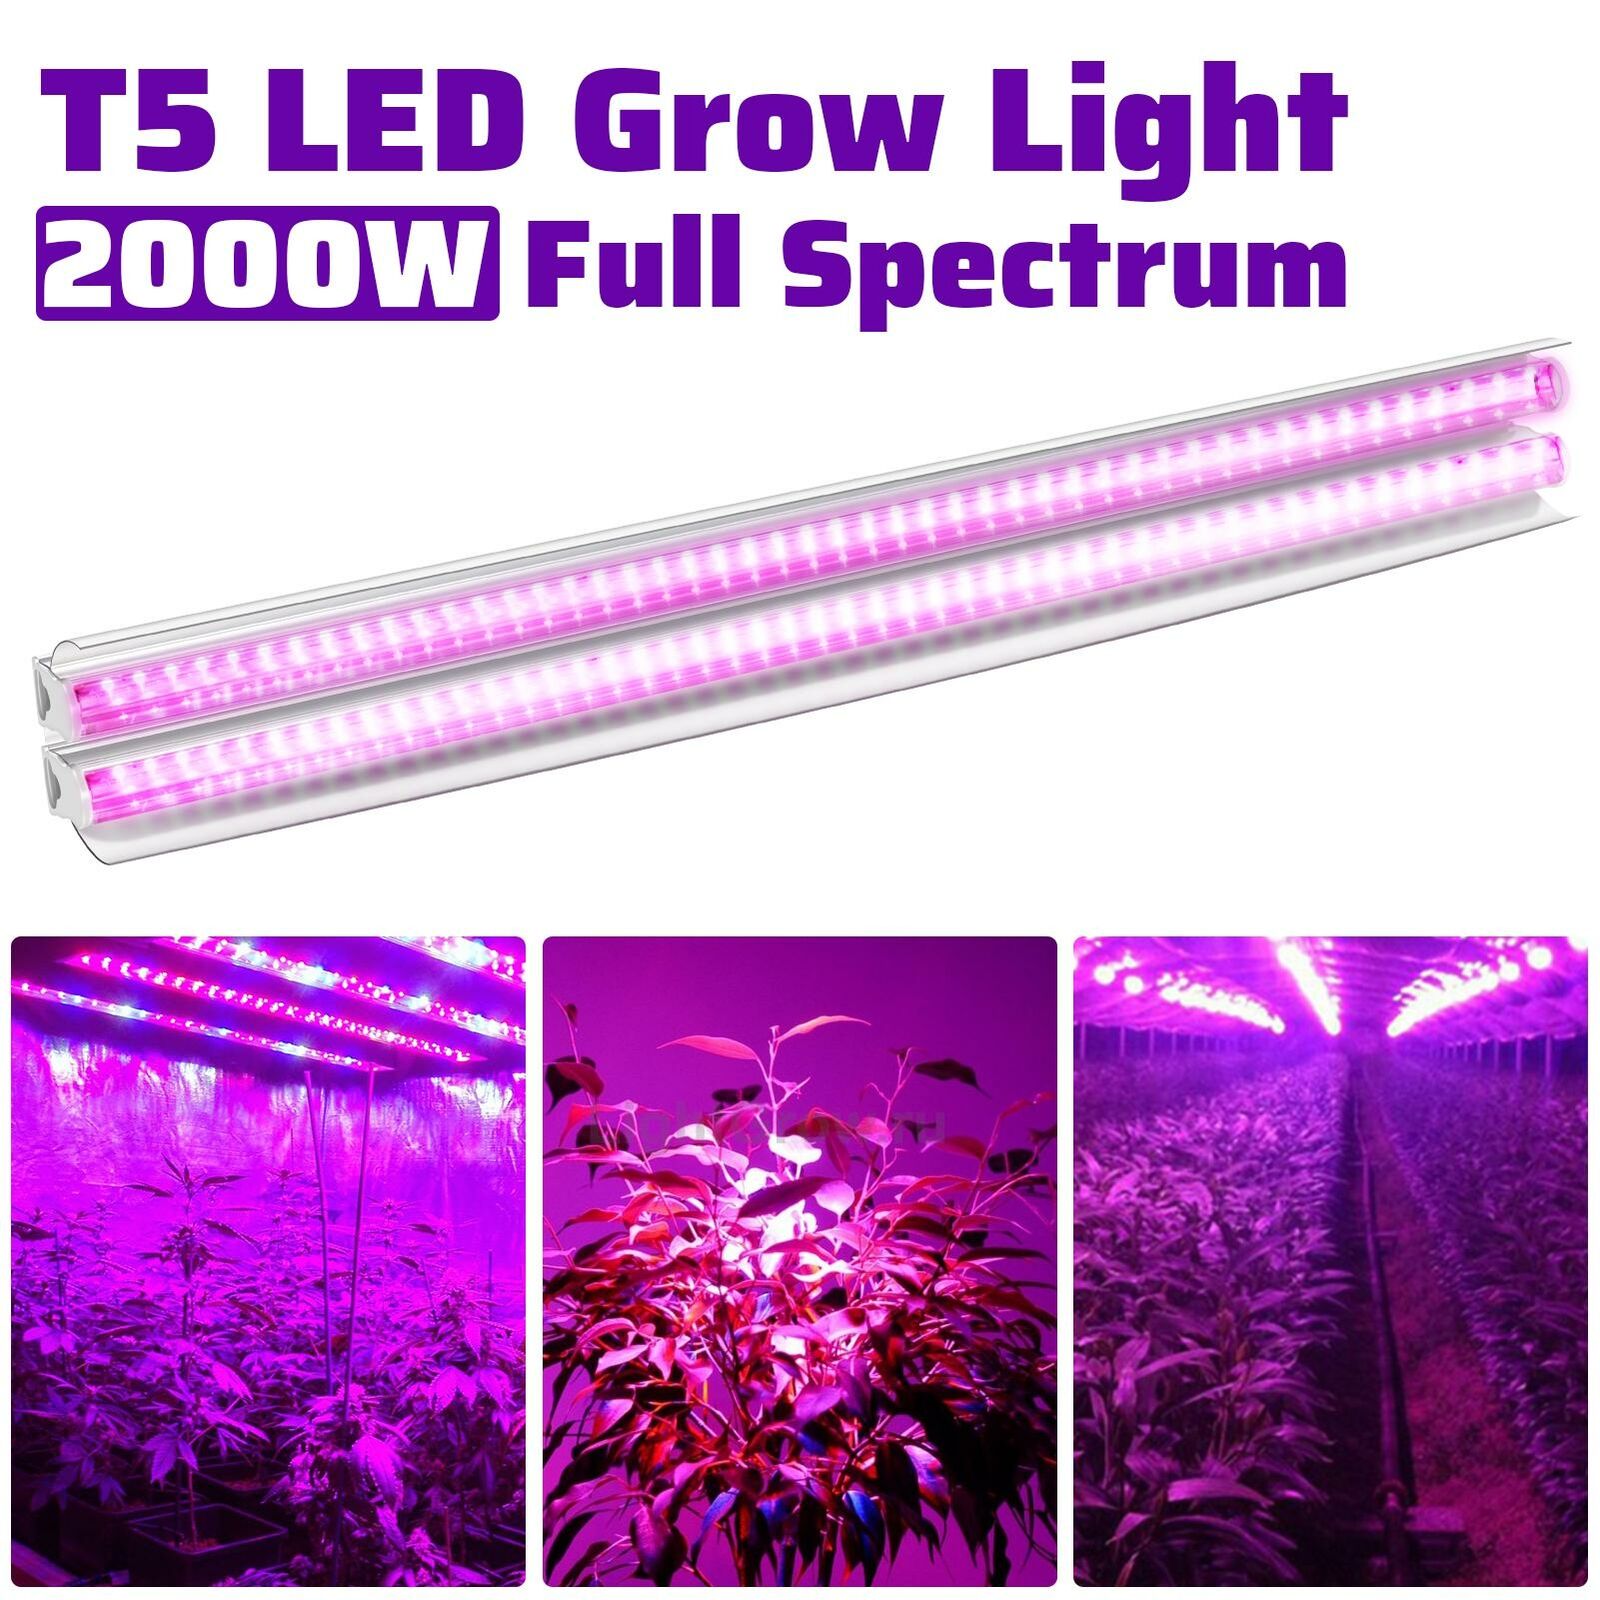 2000W LED Grow Lights Full Spectrum Indoor Hydroponic Veg Flower Plant Lamp Tube